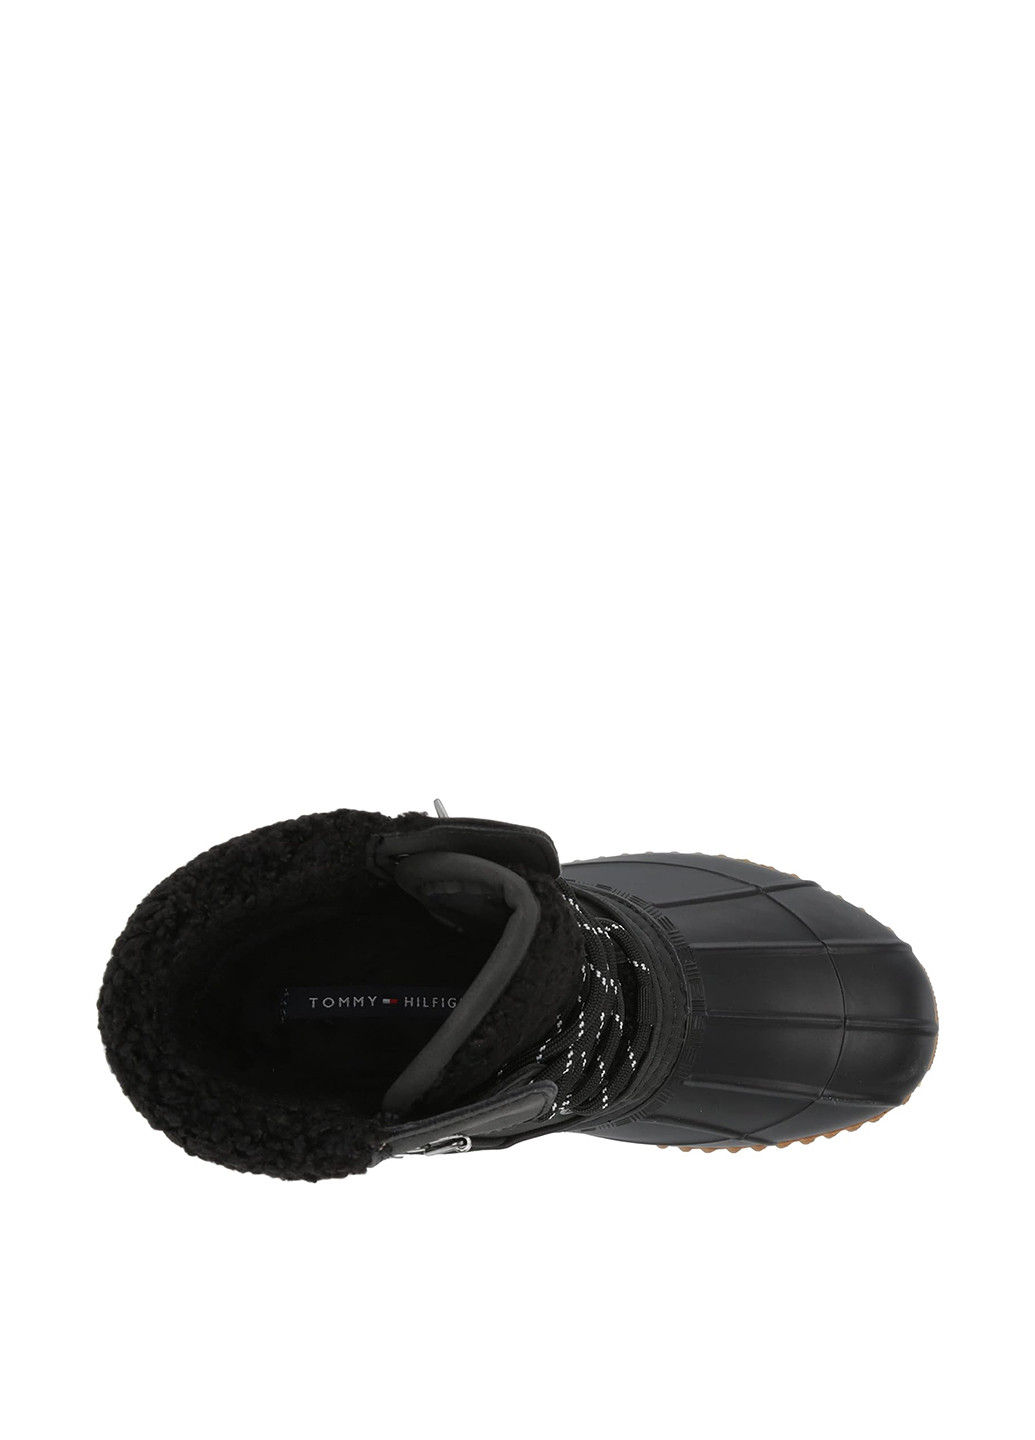 Зимние ботинки Tommy Hilfiger с логотипом тканевые, акрил